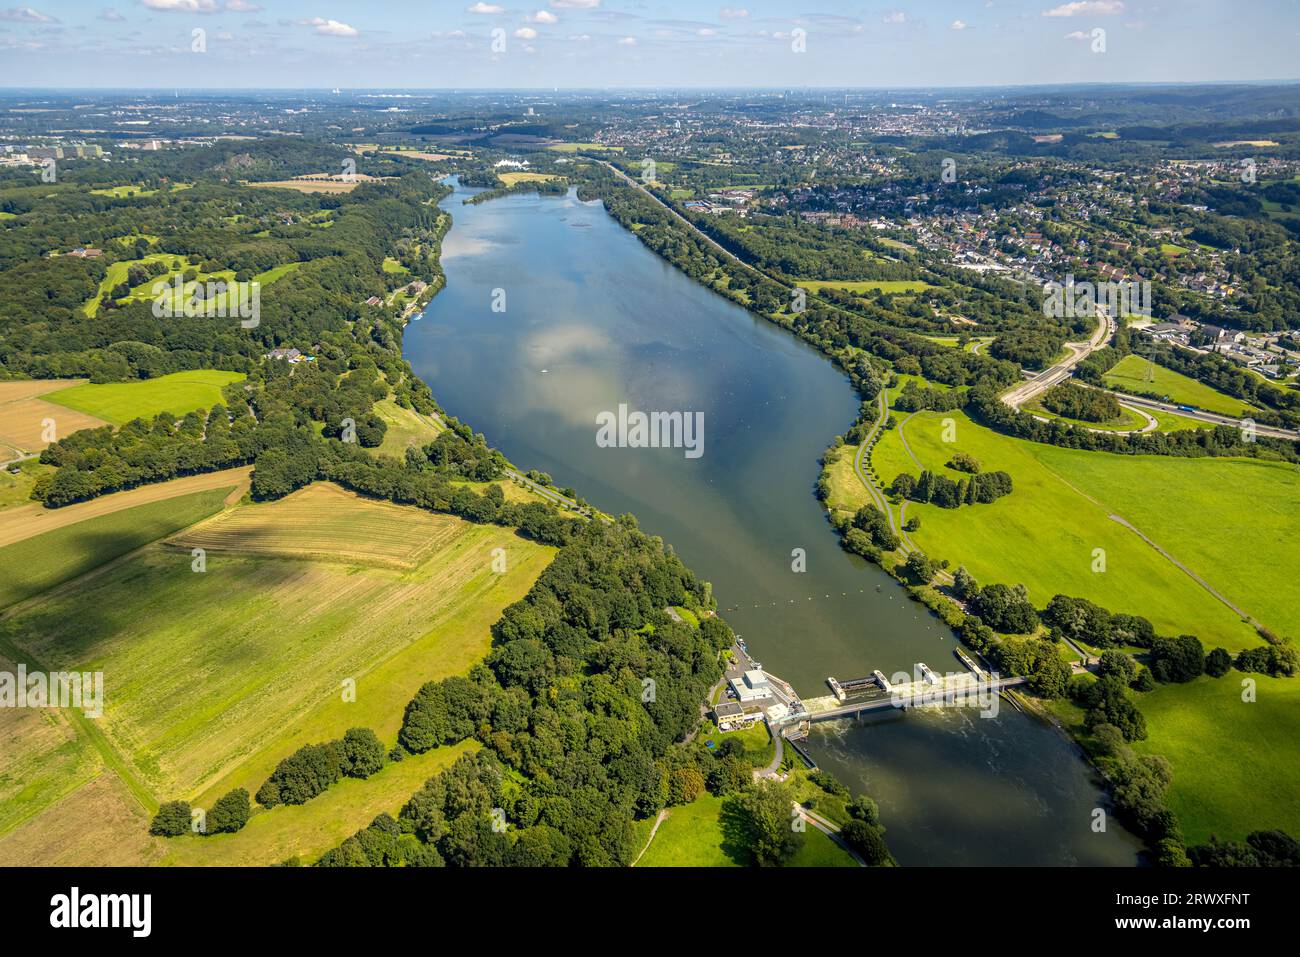 Vue aérienne, lac et barrage de Kemnader, Stiepel, Bochum, région de la Ruhr, Rhénanie du Nord-Westphalie, Allemagne, DE, Europe, Photographie aérienne, loisirs locaux sont Banque D'Images